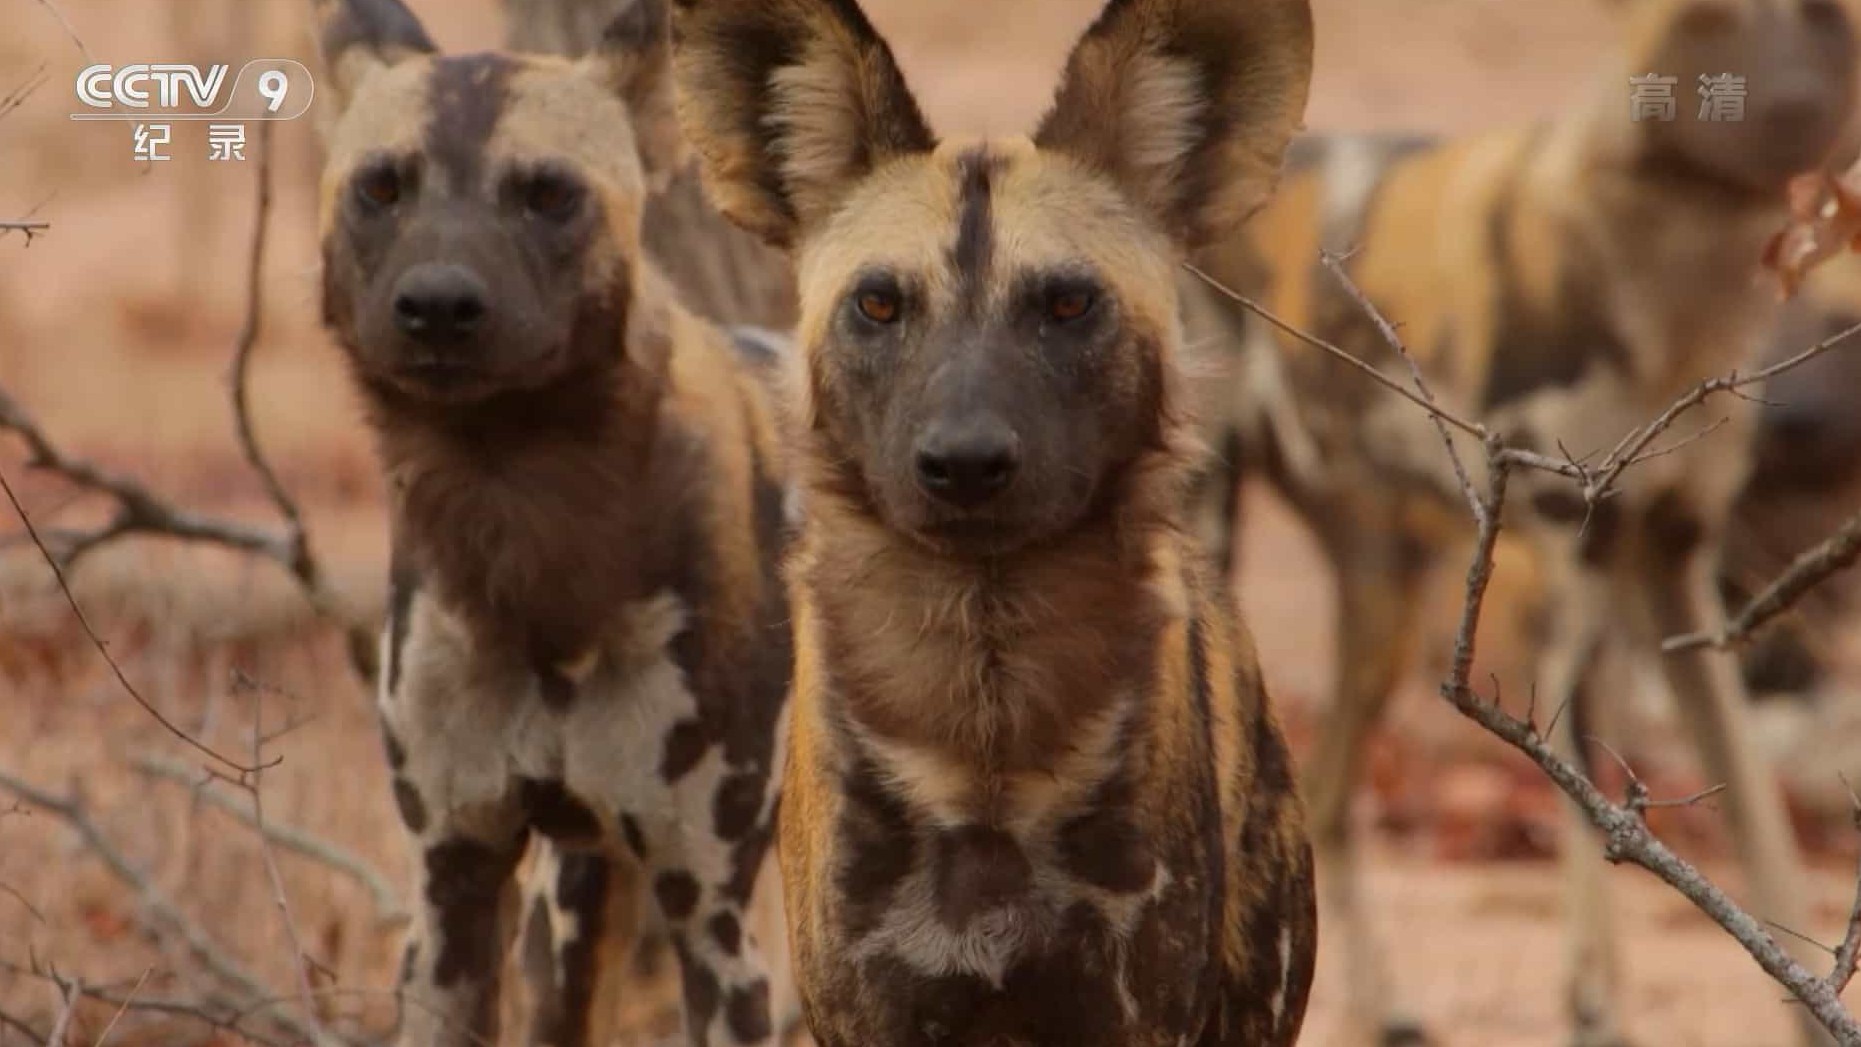 央视纪录片/动物保护《豺犬传奇/非洲野犬追踪实录A Wild Dog